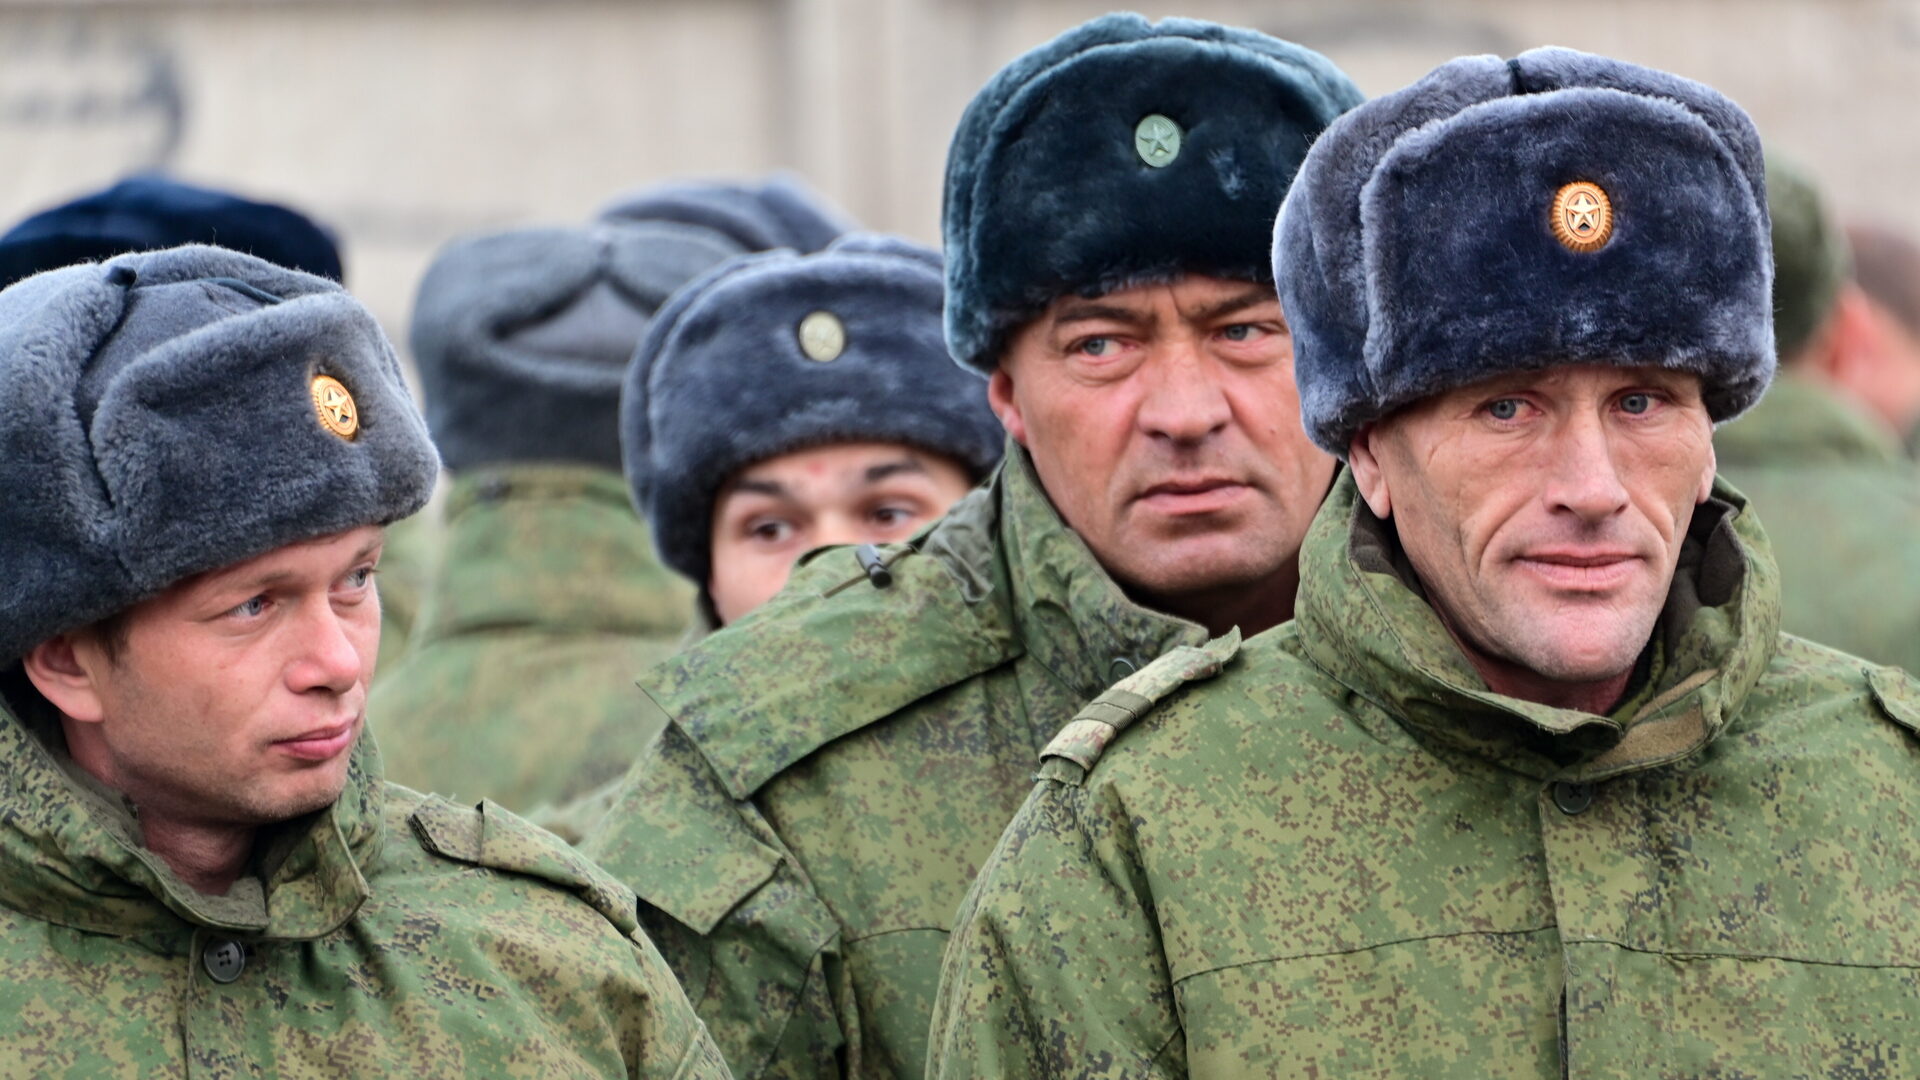 Ukrainebrief 10. februar: Op til 300.000 mobiliserede soldater står klar, men vil den russiske offensiv få succes?